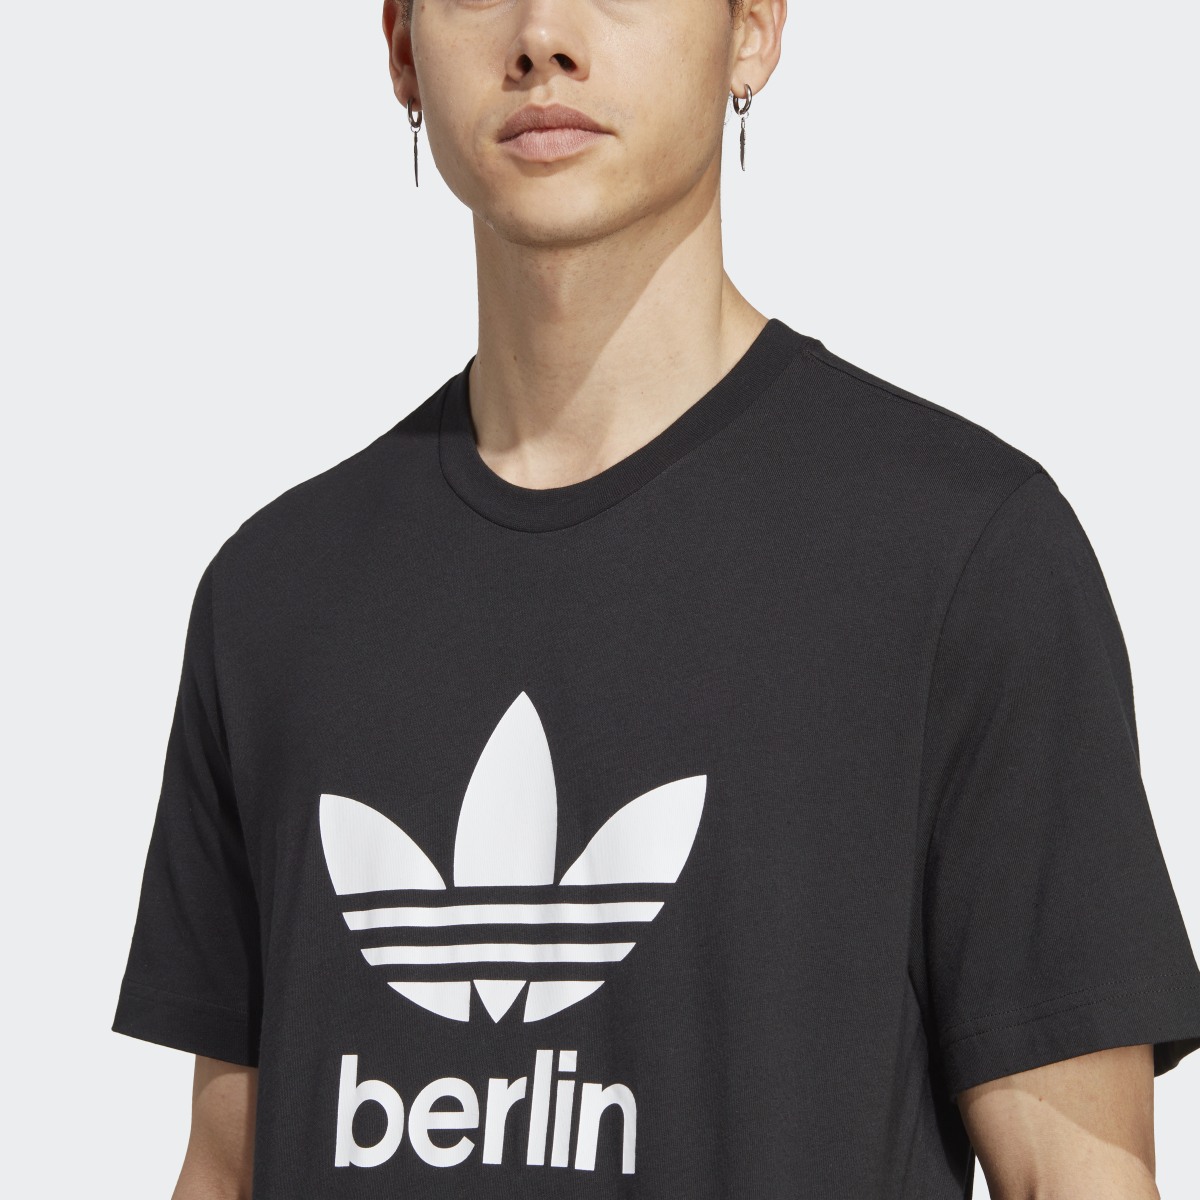 Adidas T-shirt Icone Berlin City Originals. 6